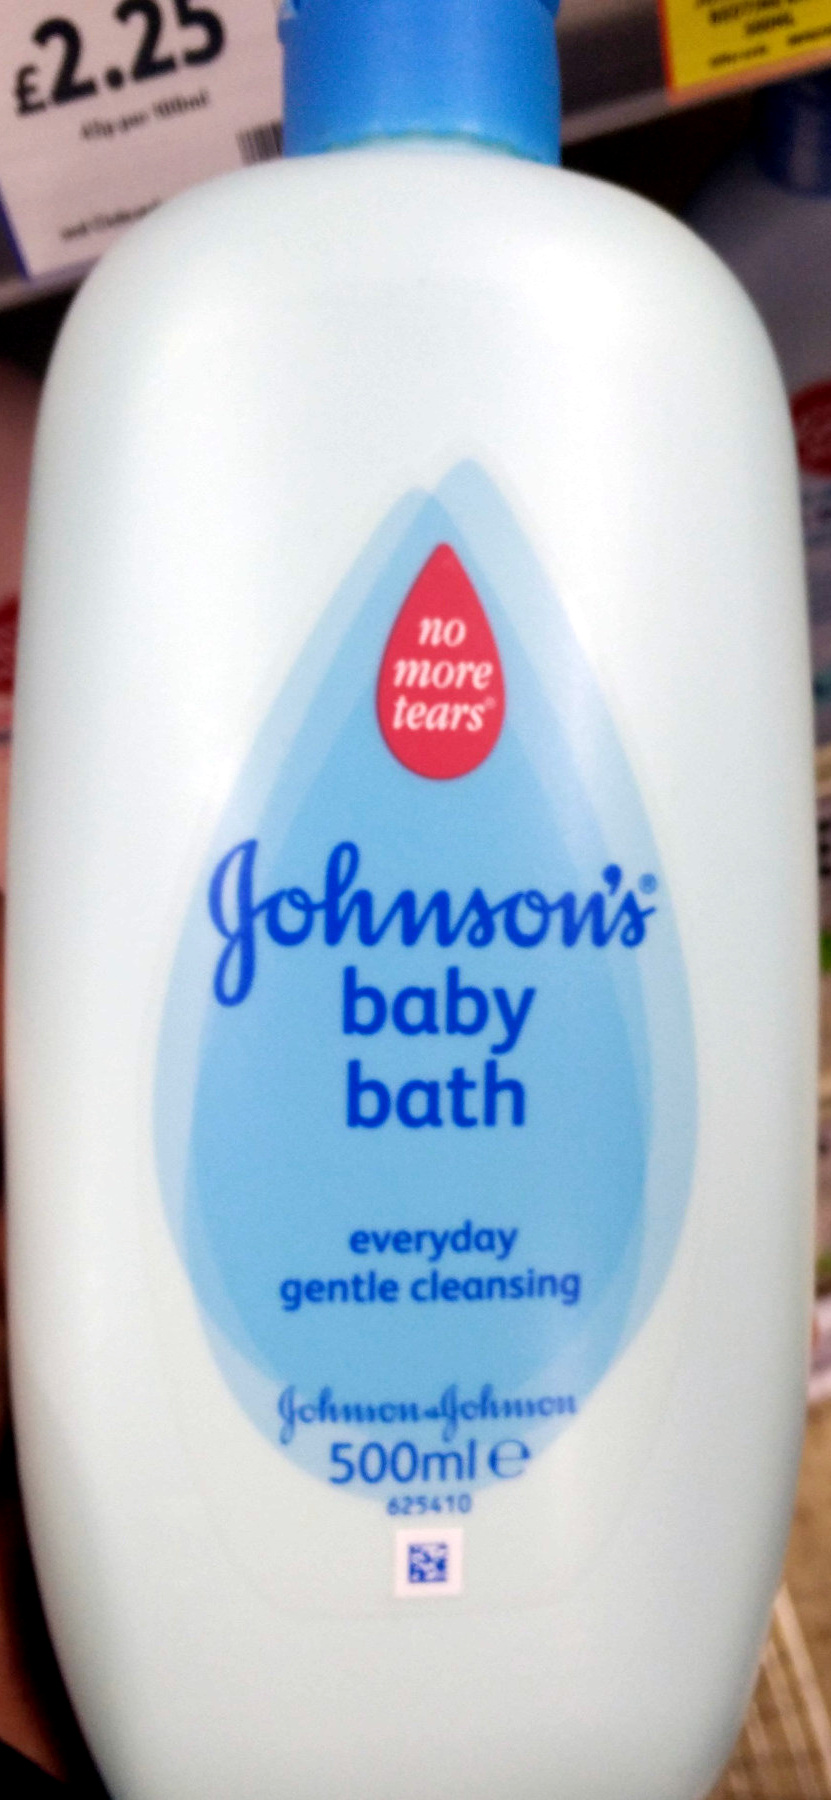 Baby Bath - Product - en